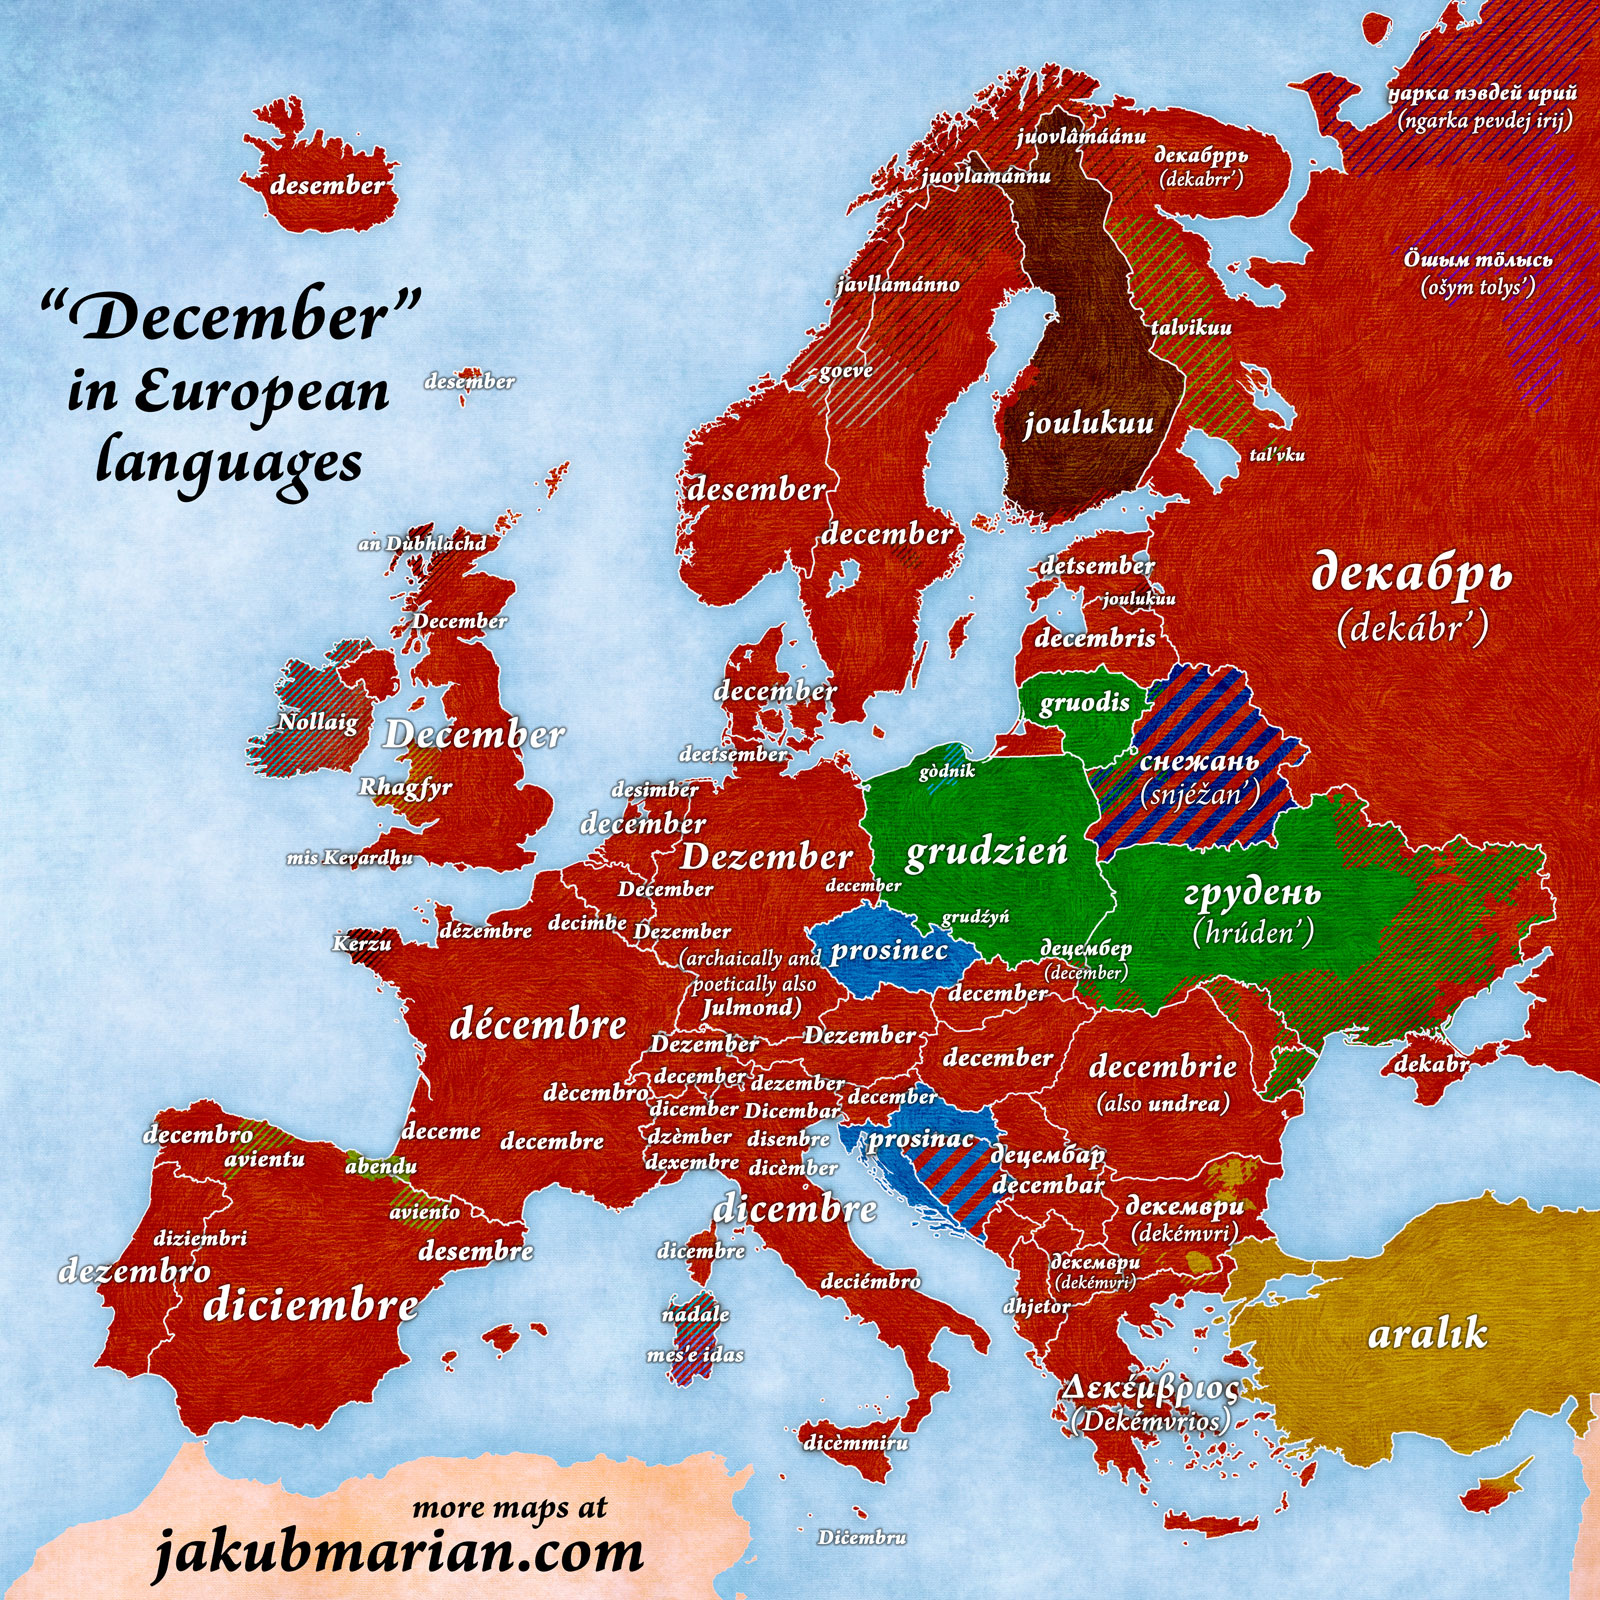 December in European languages